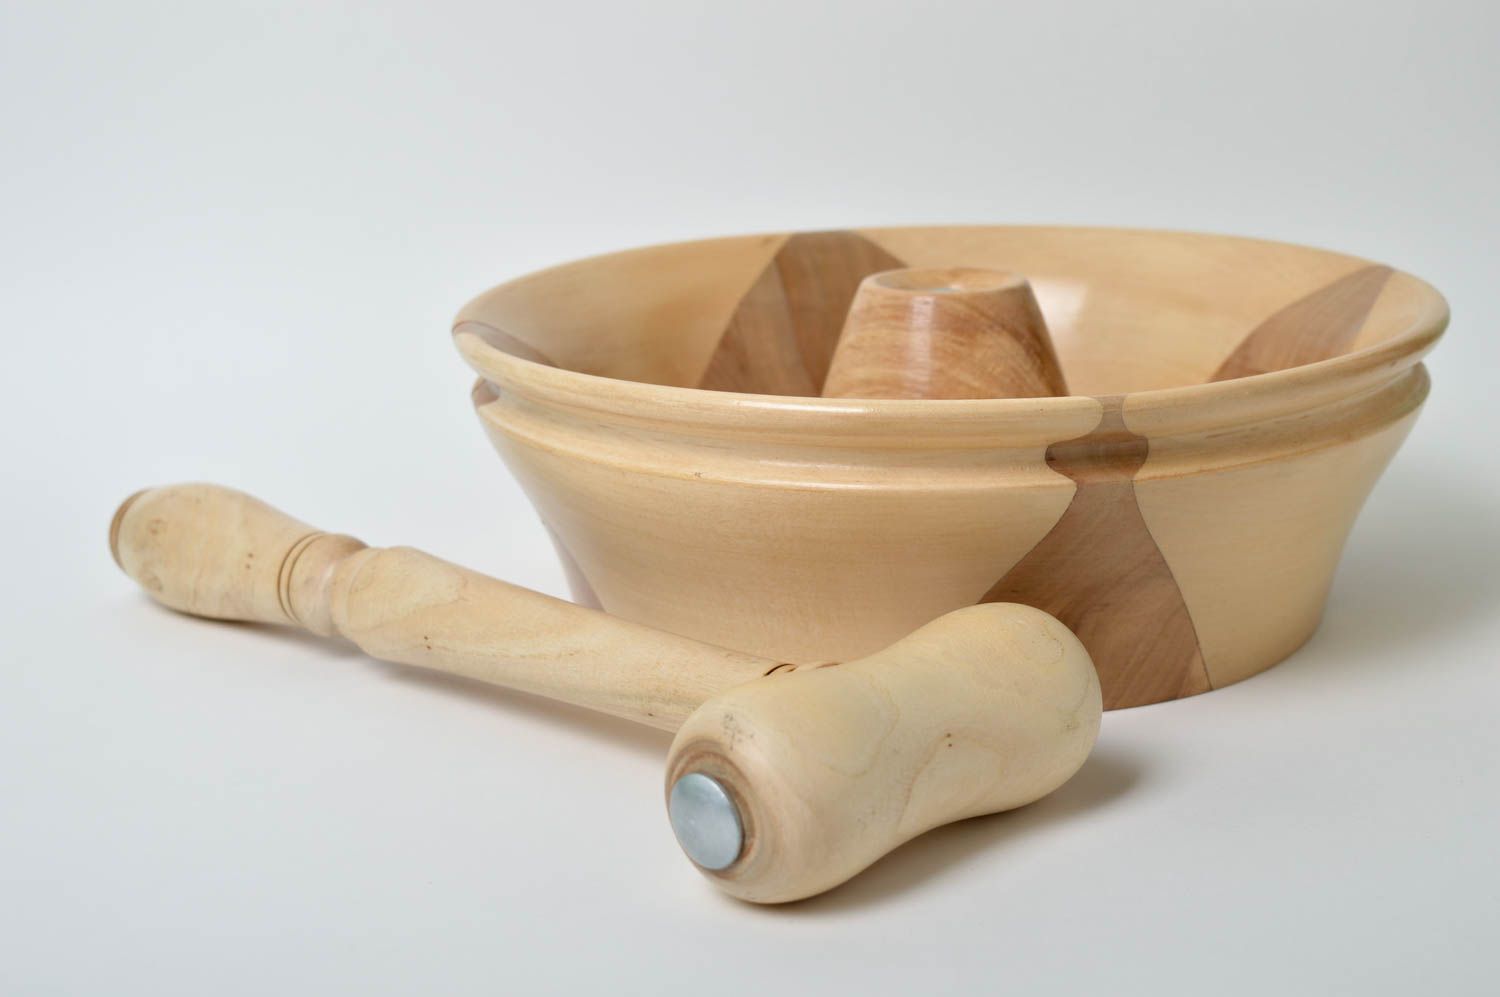 Unusual handmade wooden nutcracker tool kitchen goods kitchen supplies  photo 4